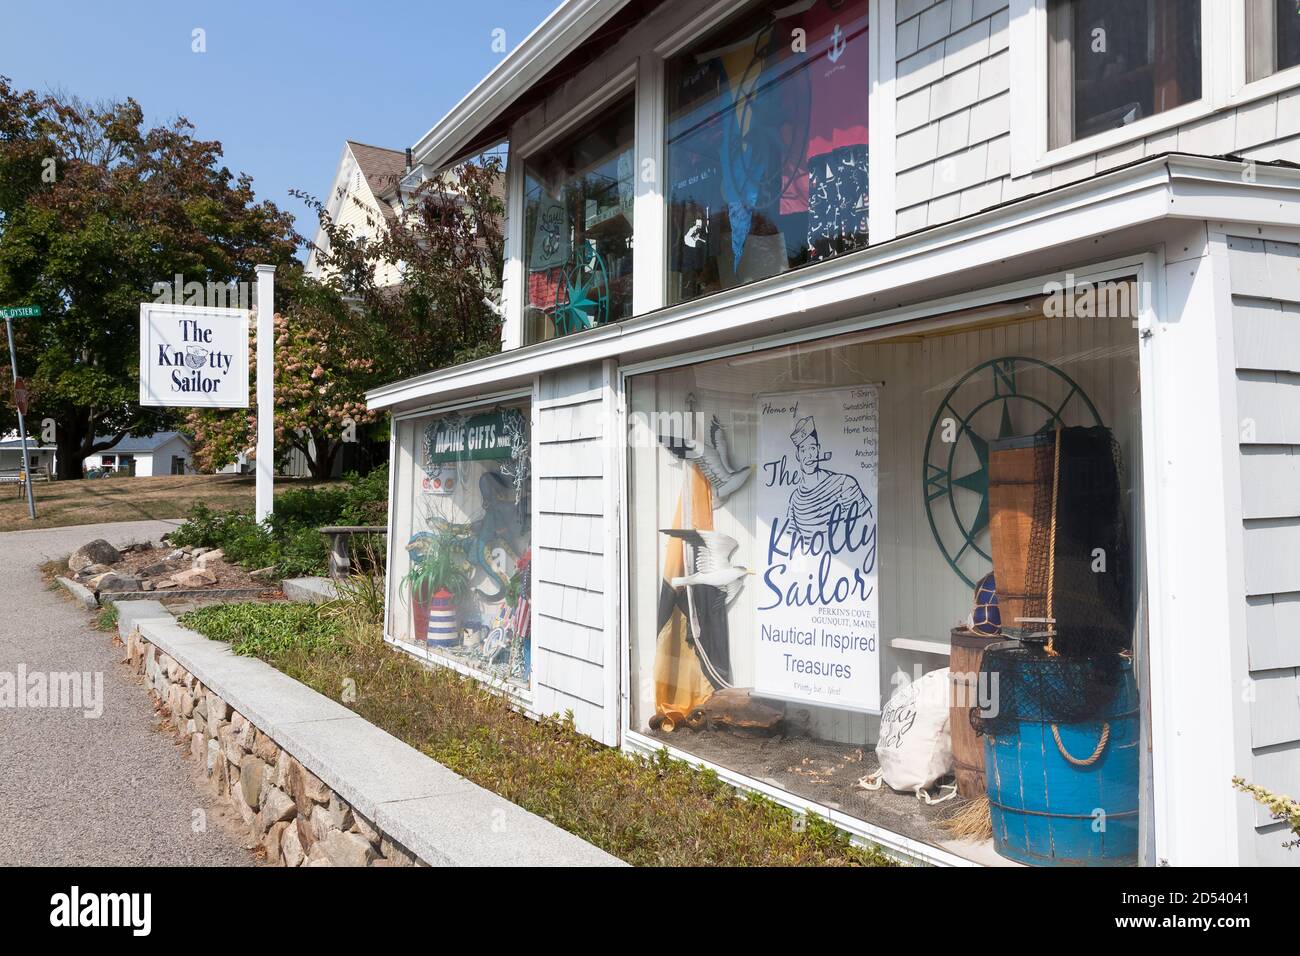 La tienda de regalos Knotty Sailor en Ogunquit, Maine, que vende artículos náuticos. Foto de stock